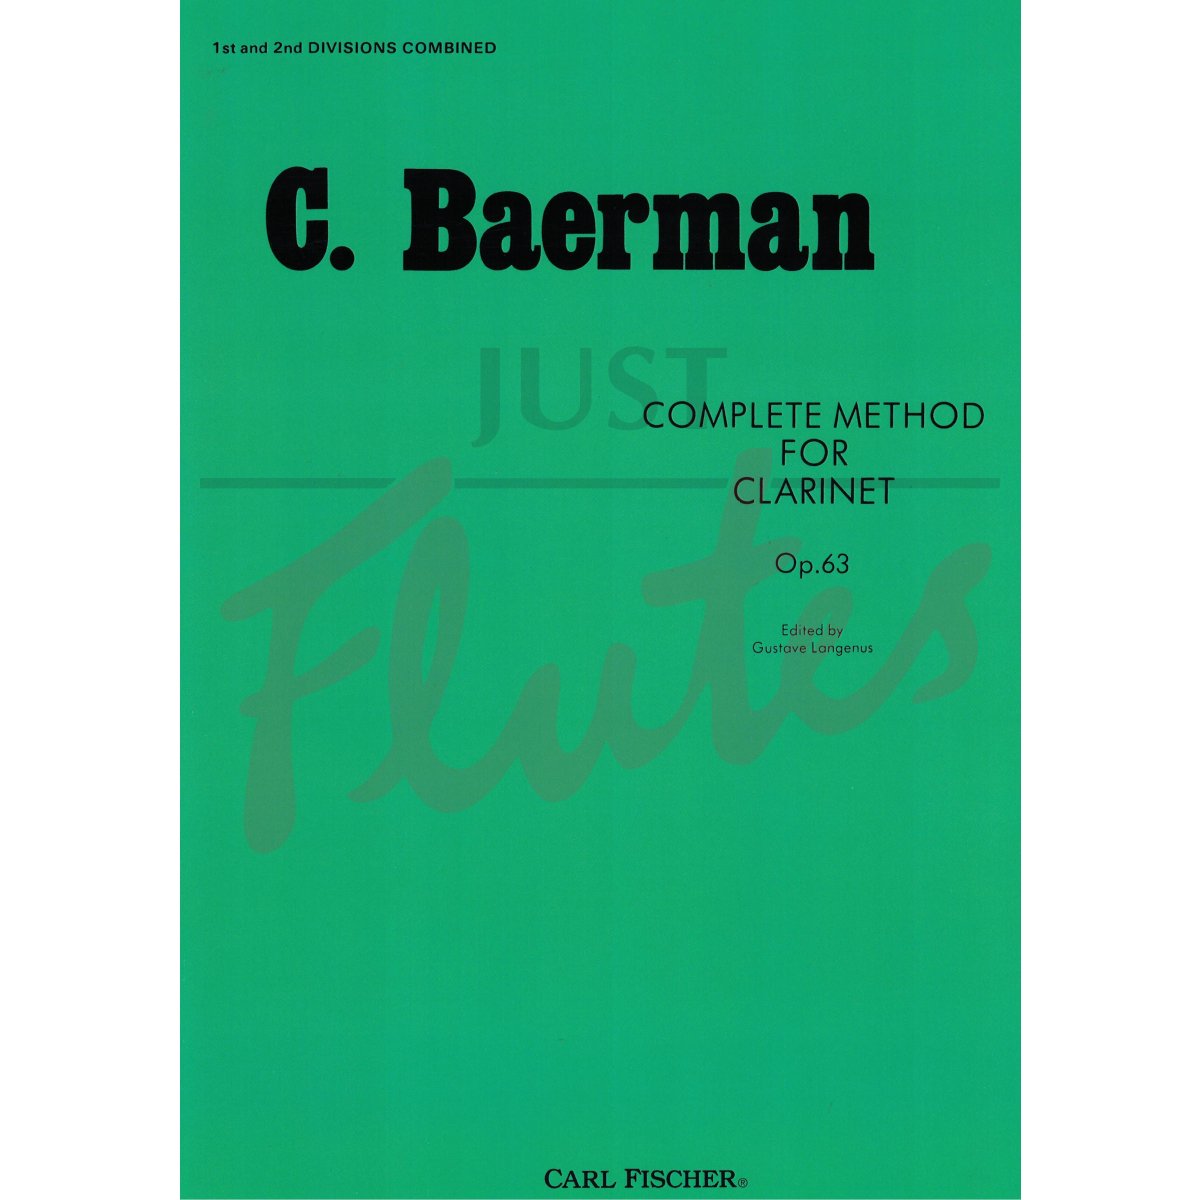 C. Baermann, Complete Method